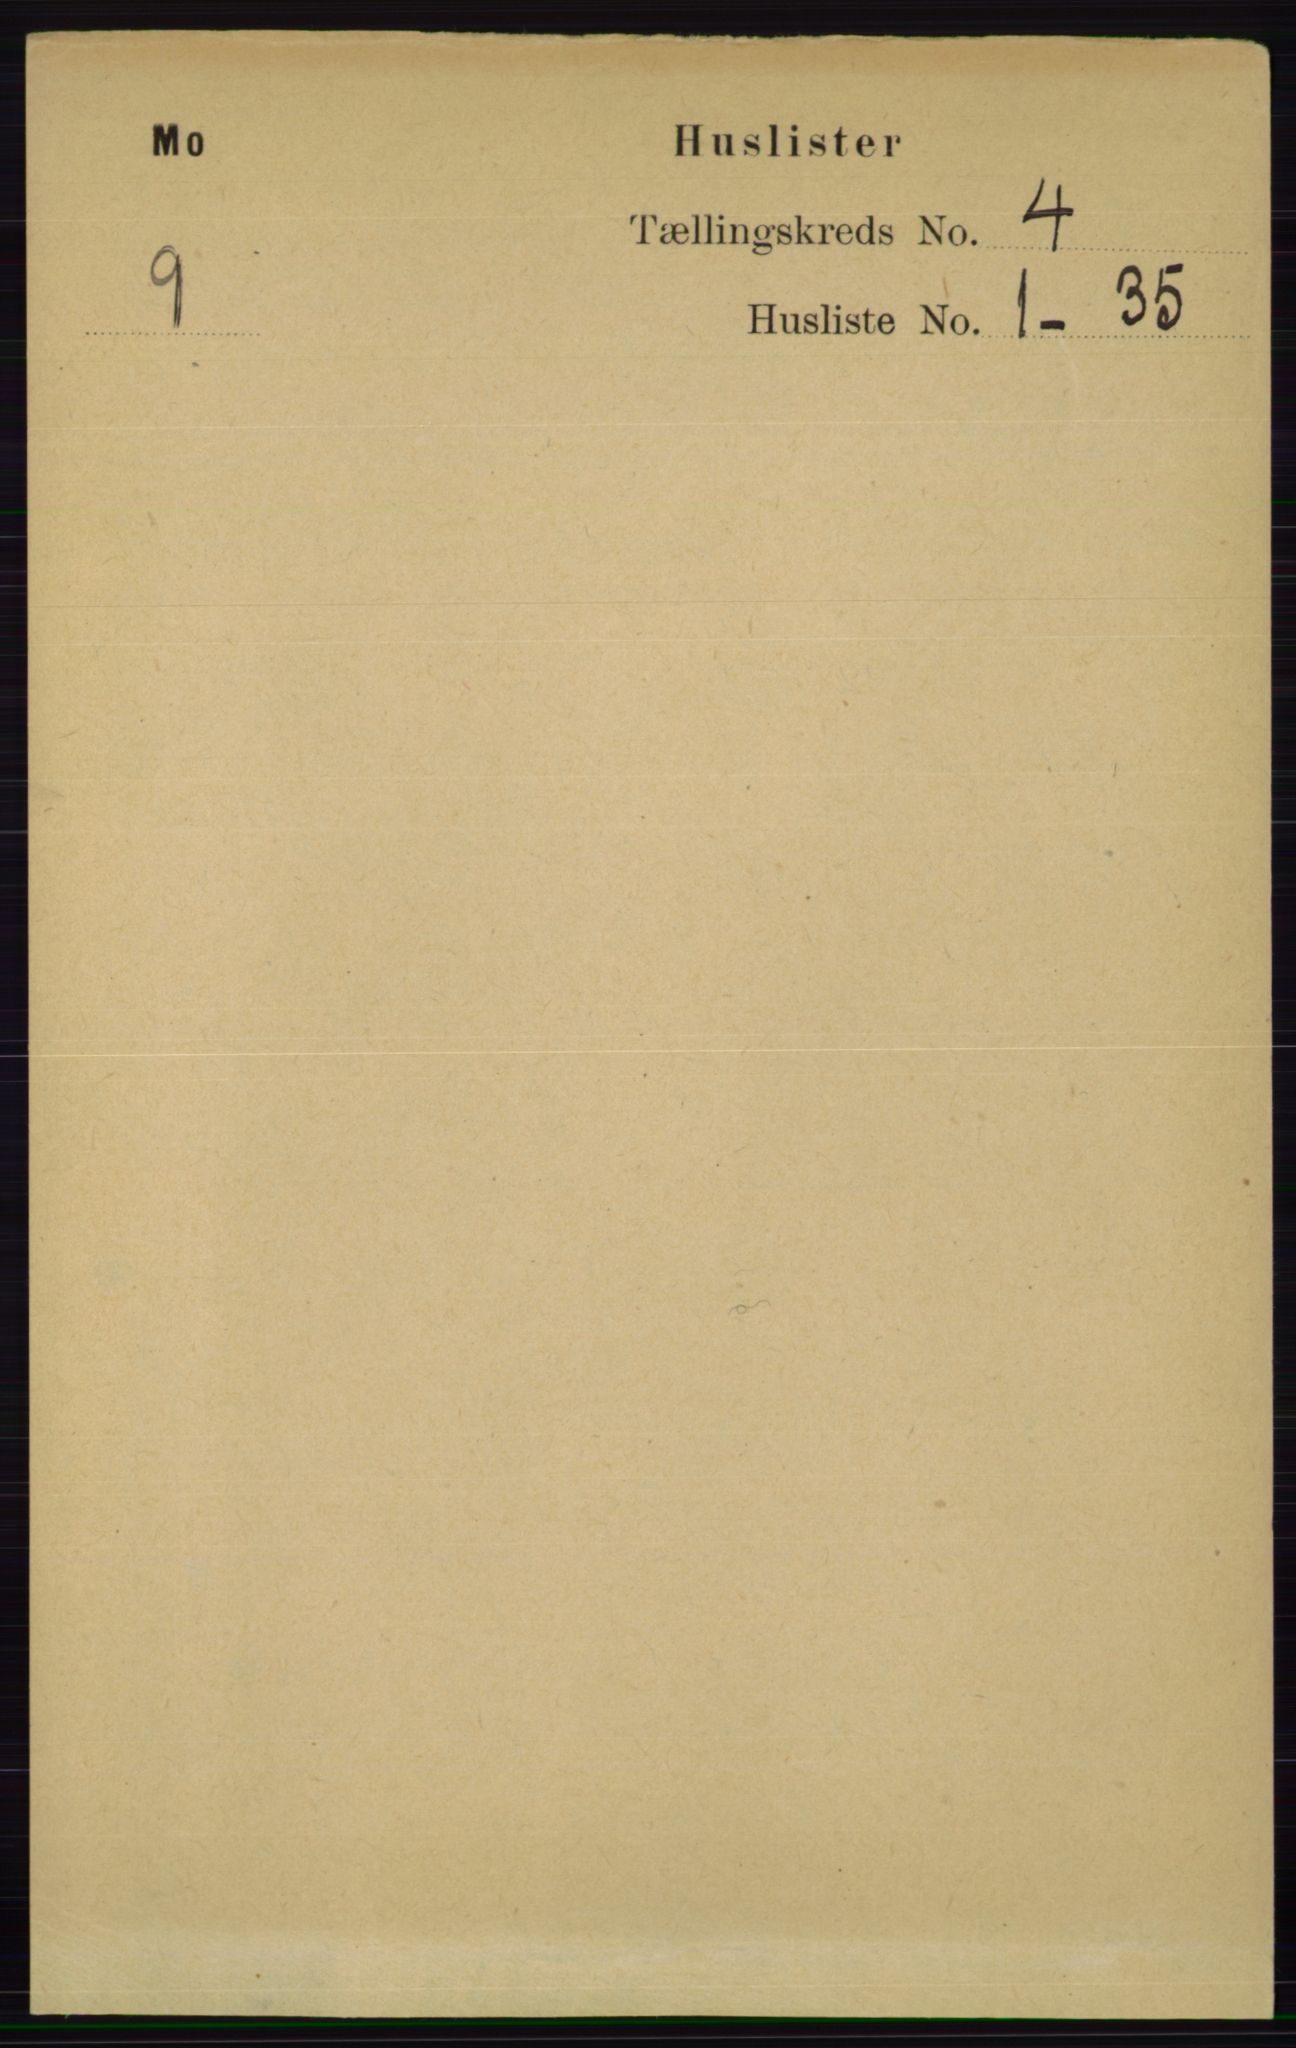 RA, Folketelling 1891 for 0832 Mo herred, 1891, s. 979